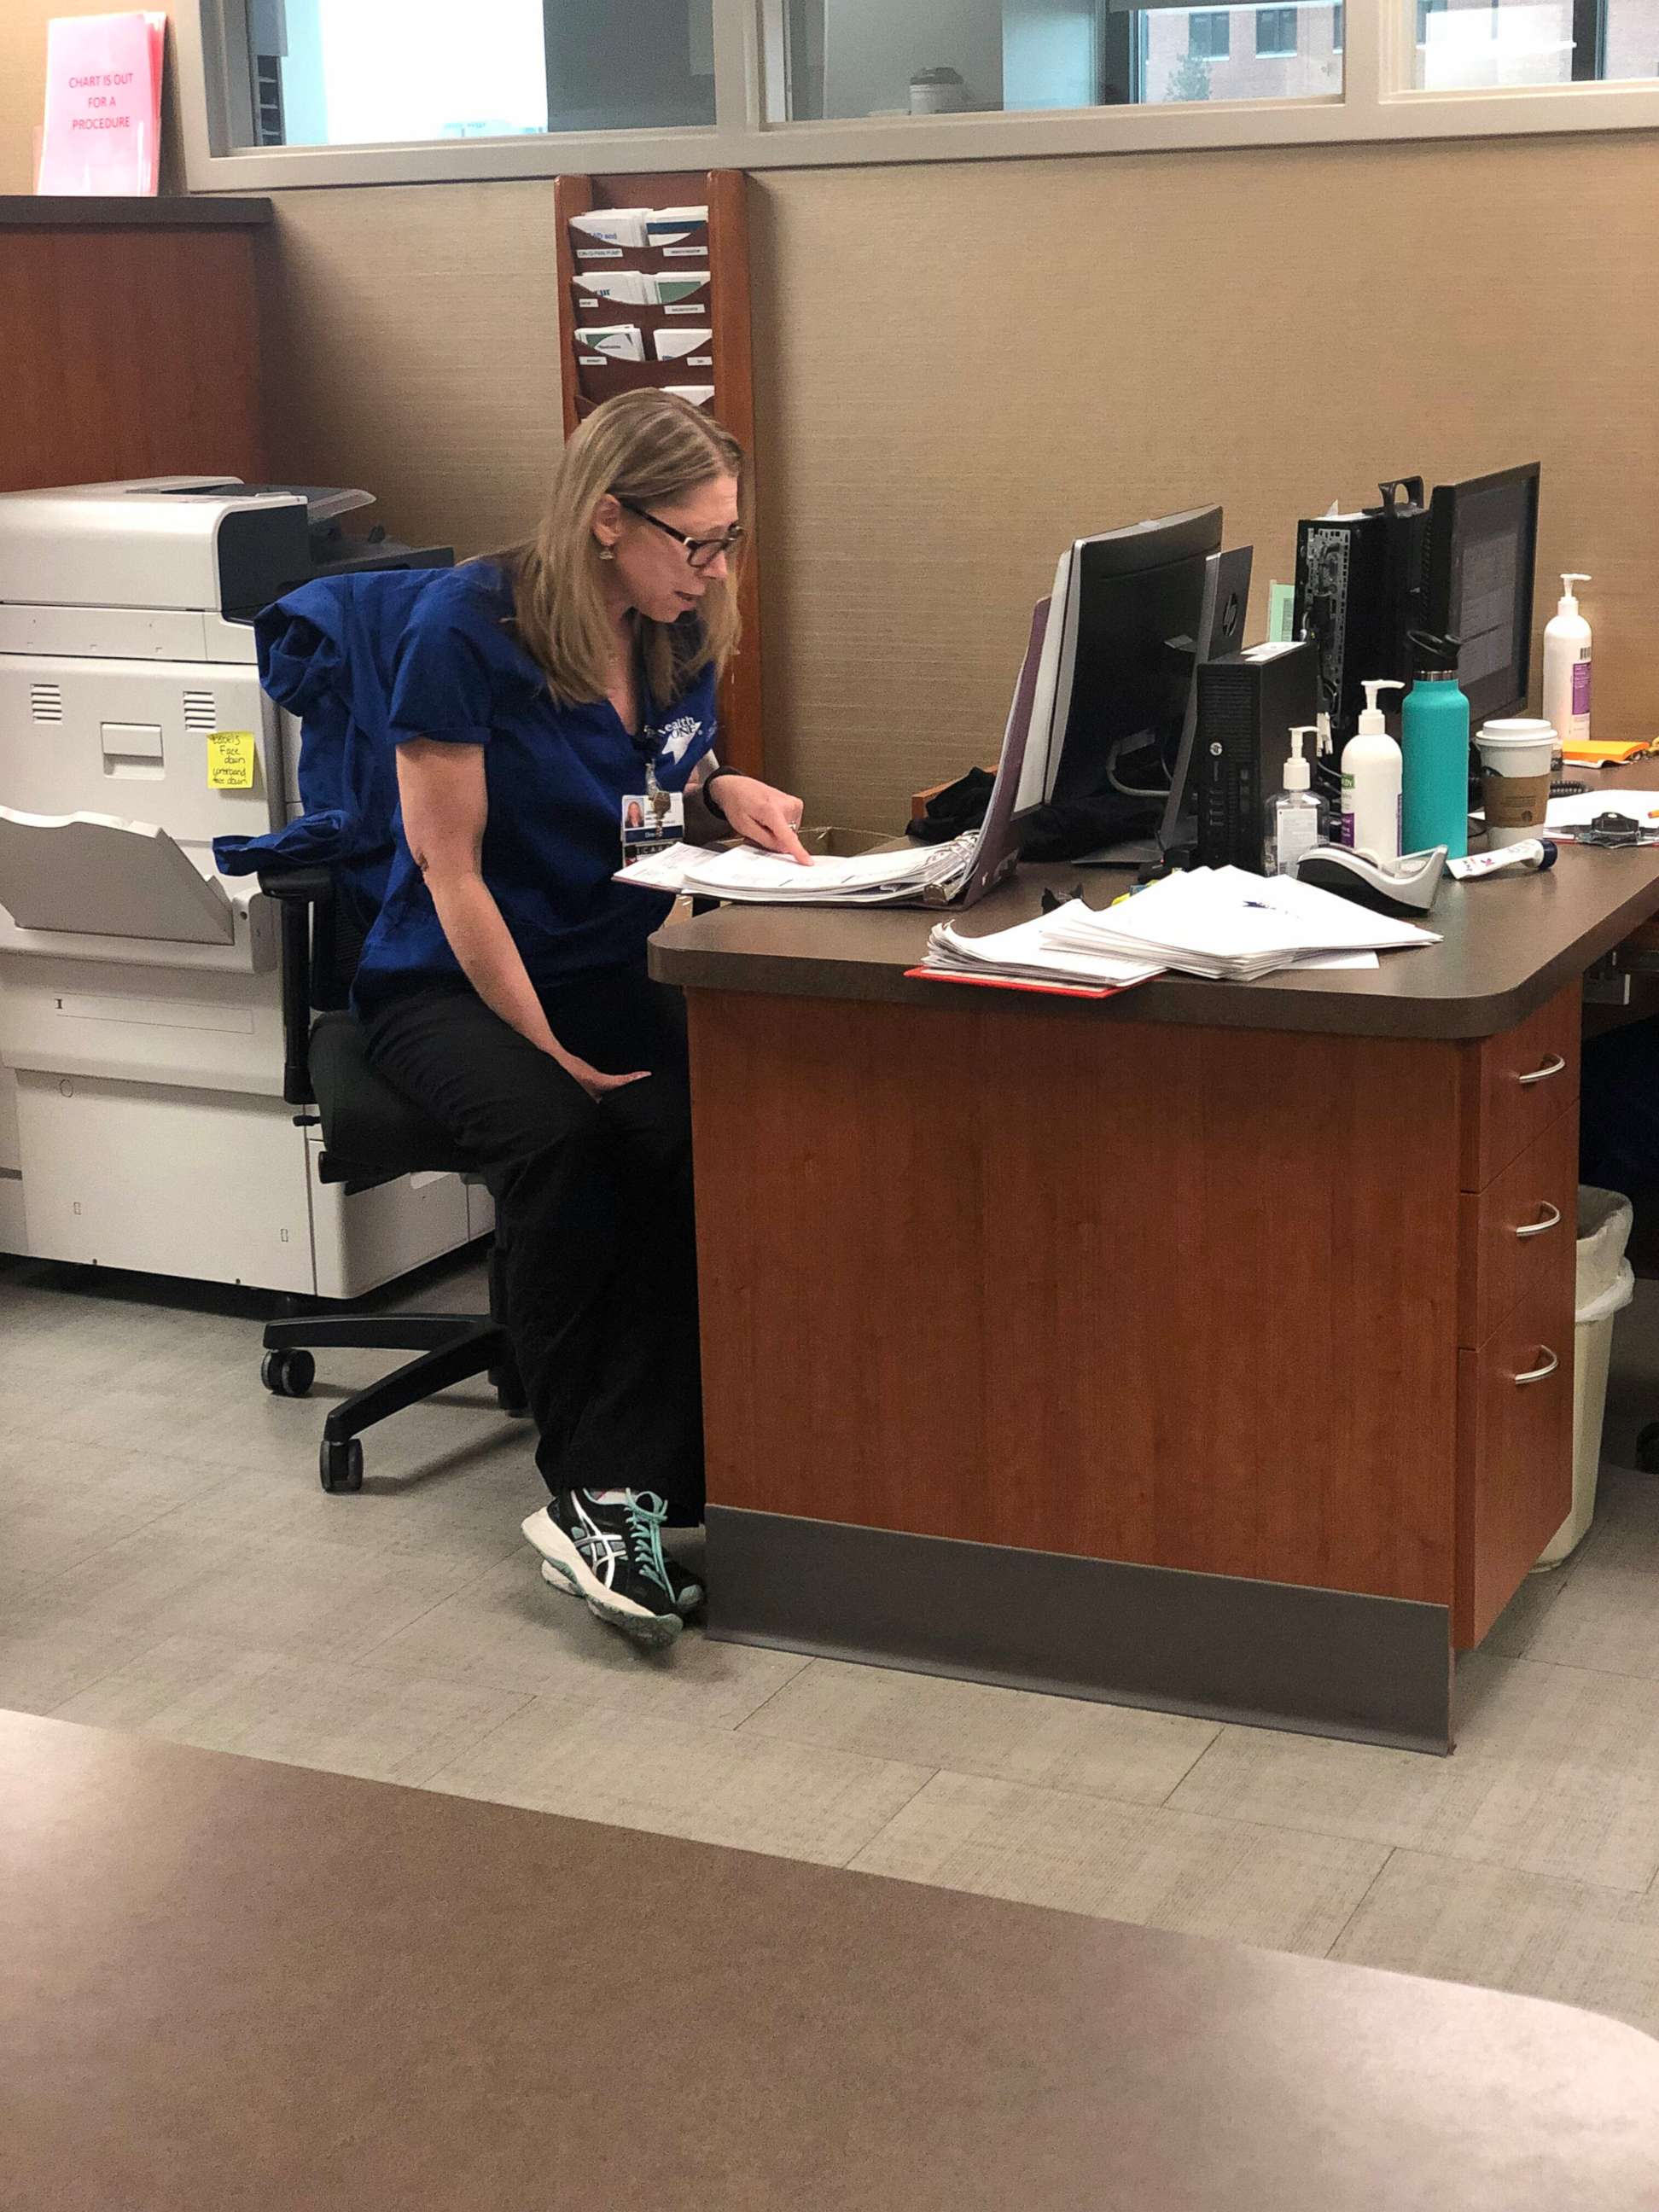 PHOTO: Jennifer Gaydosh, 48, works as a cardiovascular registered nurse at Rose Medical Center in Denver.